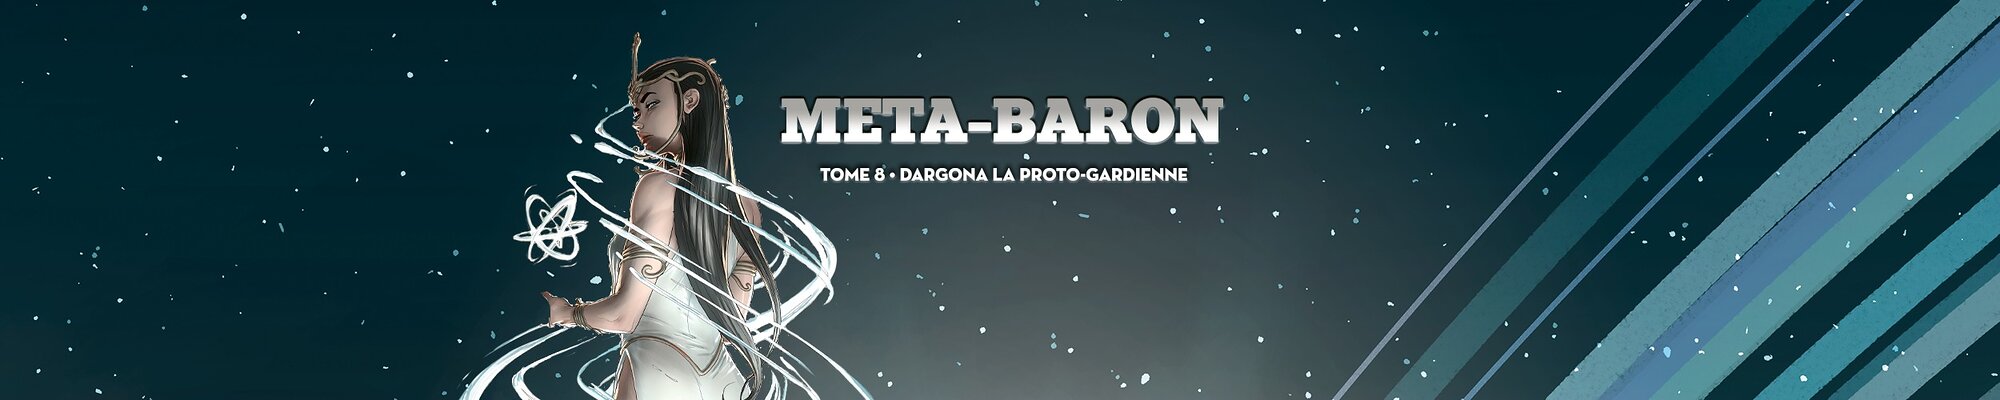 Méta-Baron Tome 8